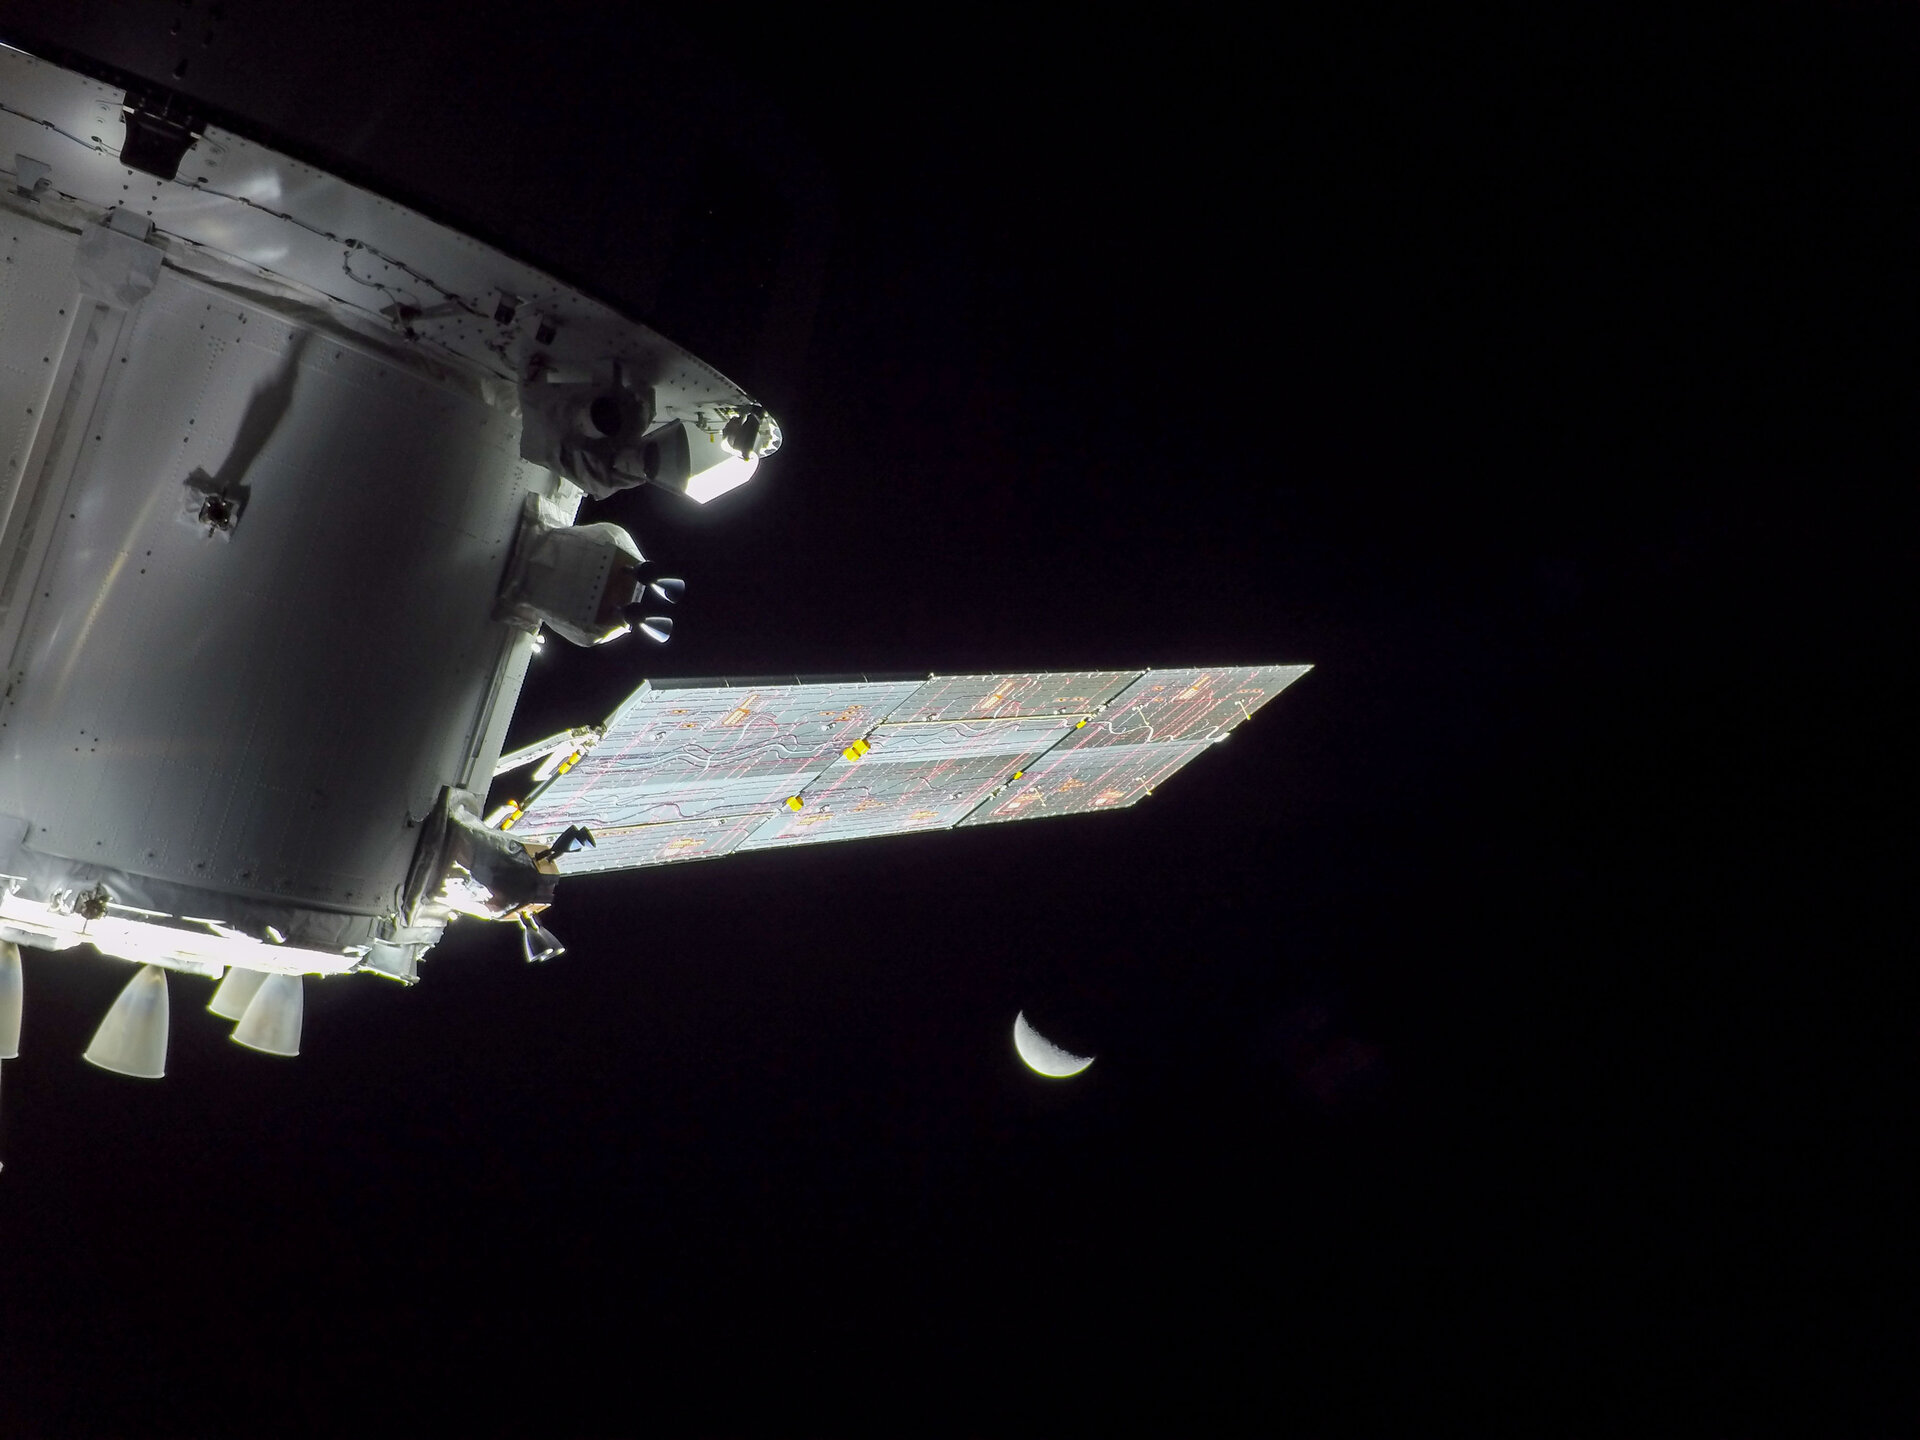 24 नवंबर 2022 को आर्टेमिस I मिशन के उड़ान दिवस नौ पर, ईएसए के यूरोपीय सेवा मॉड्यूल से देखा गया चंद्रमा का दृश्य जो नासा के ओरियन अंतरिक्ष यान को चंद्रमा और वापस ले जा रहा है।